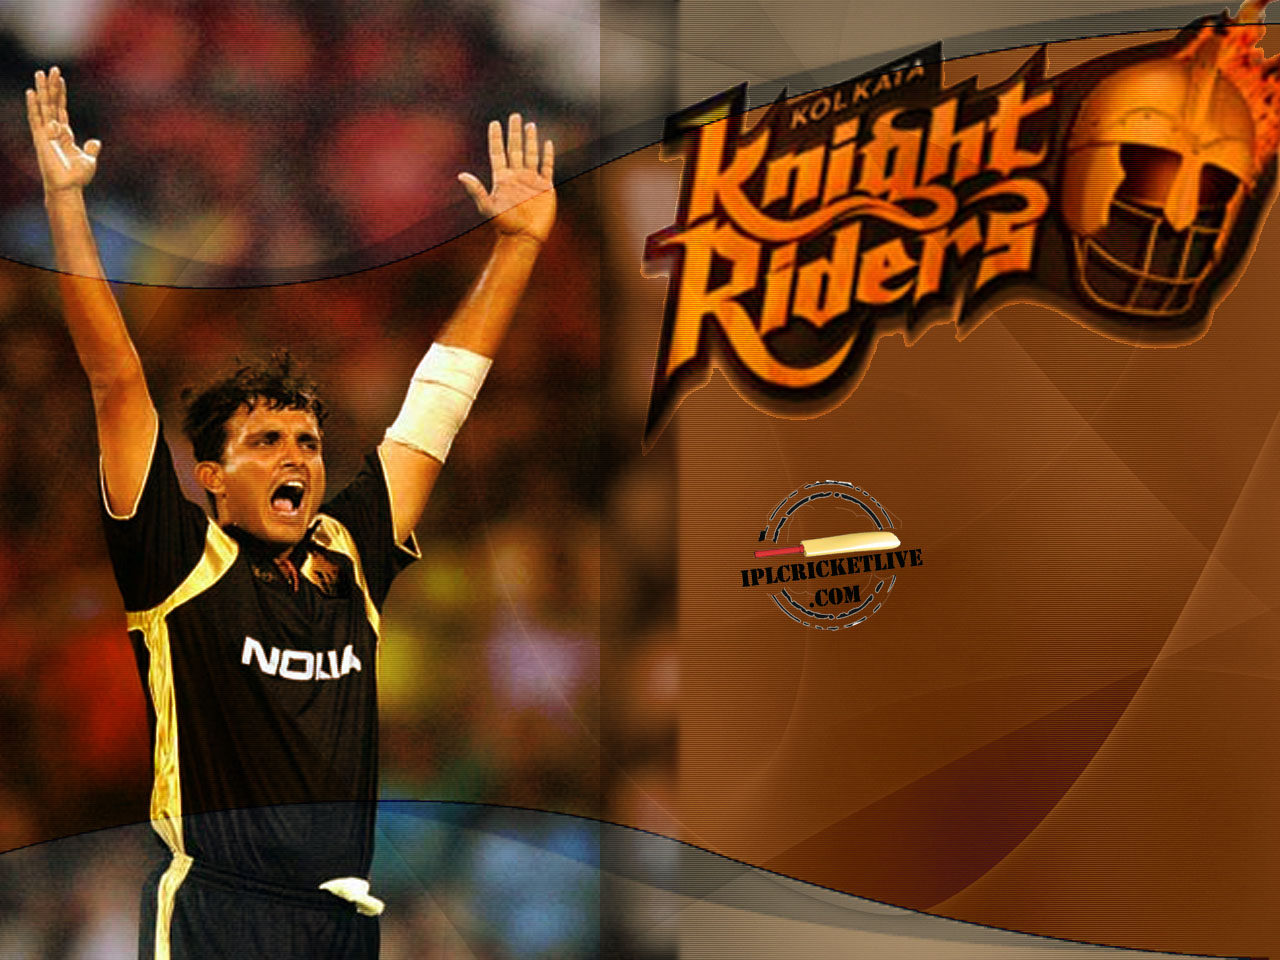 Kolkata Knight Riders 2008 - 1280x960 Wallpaper 